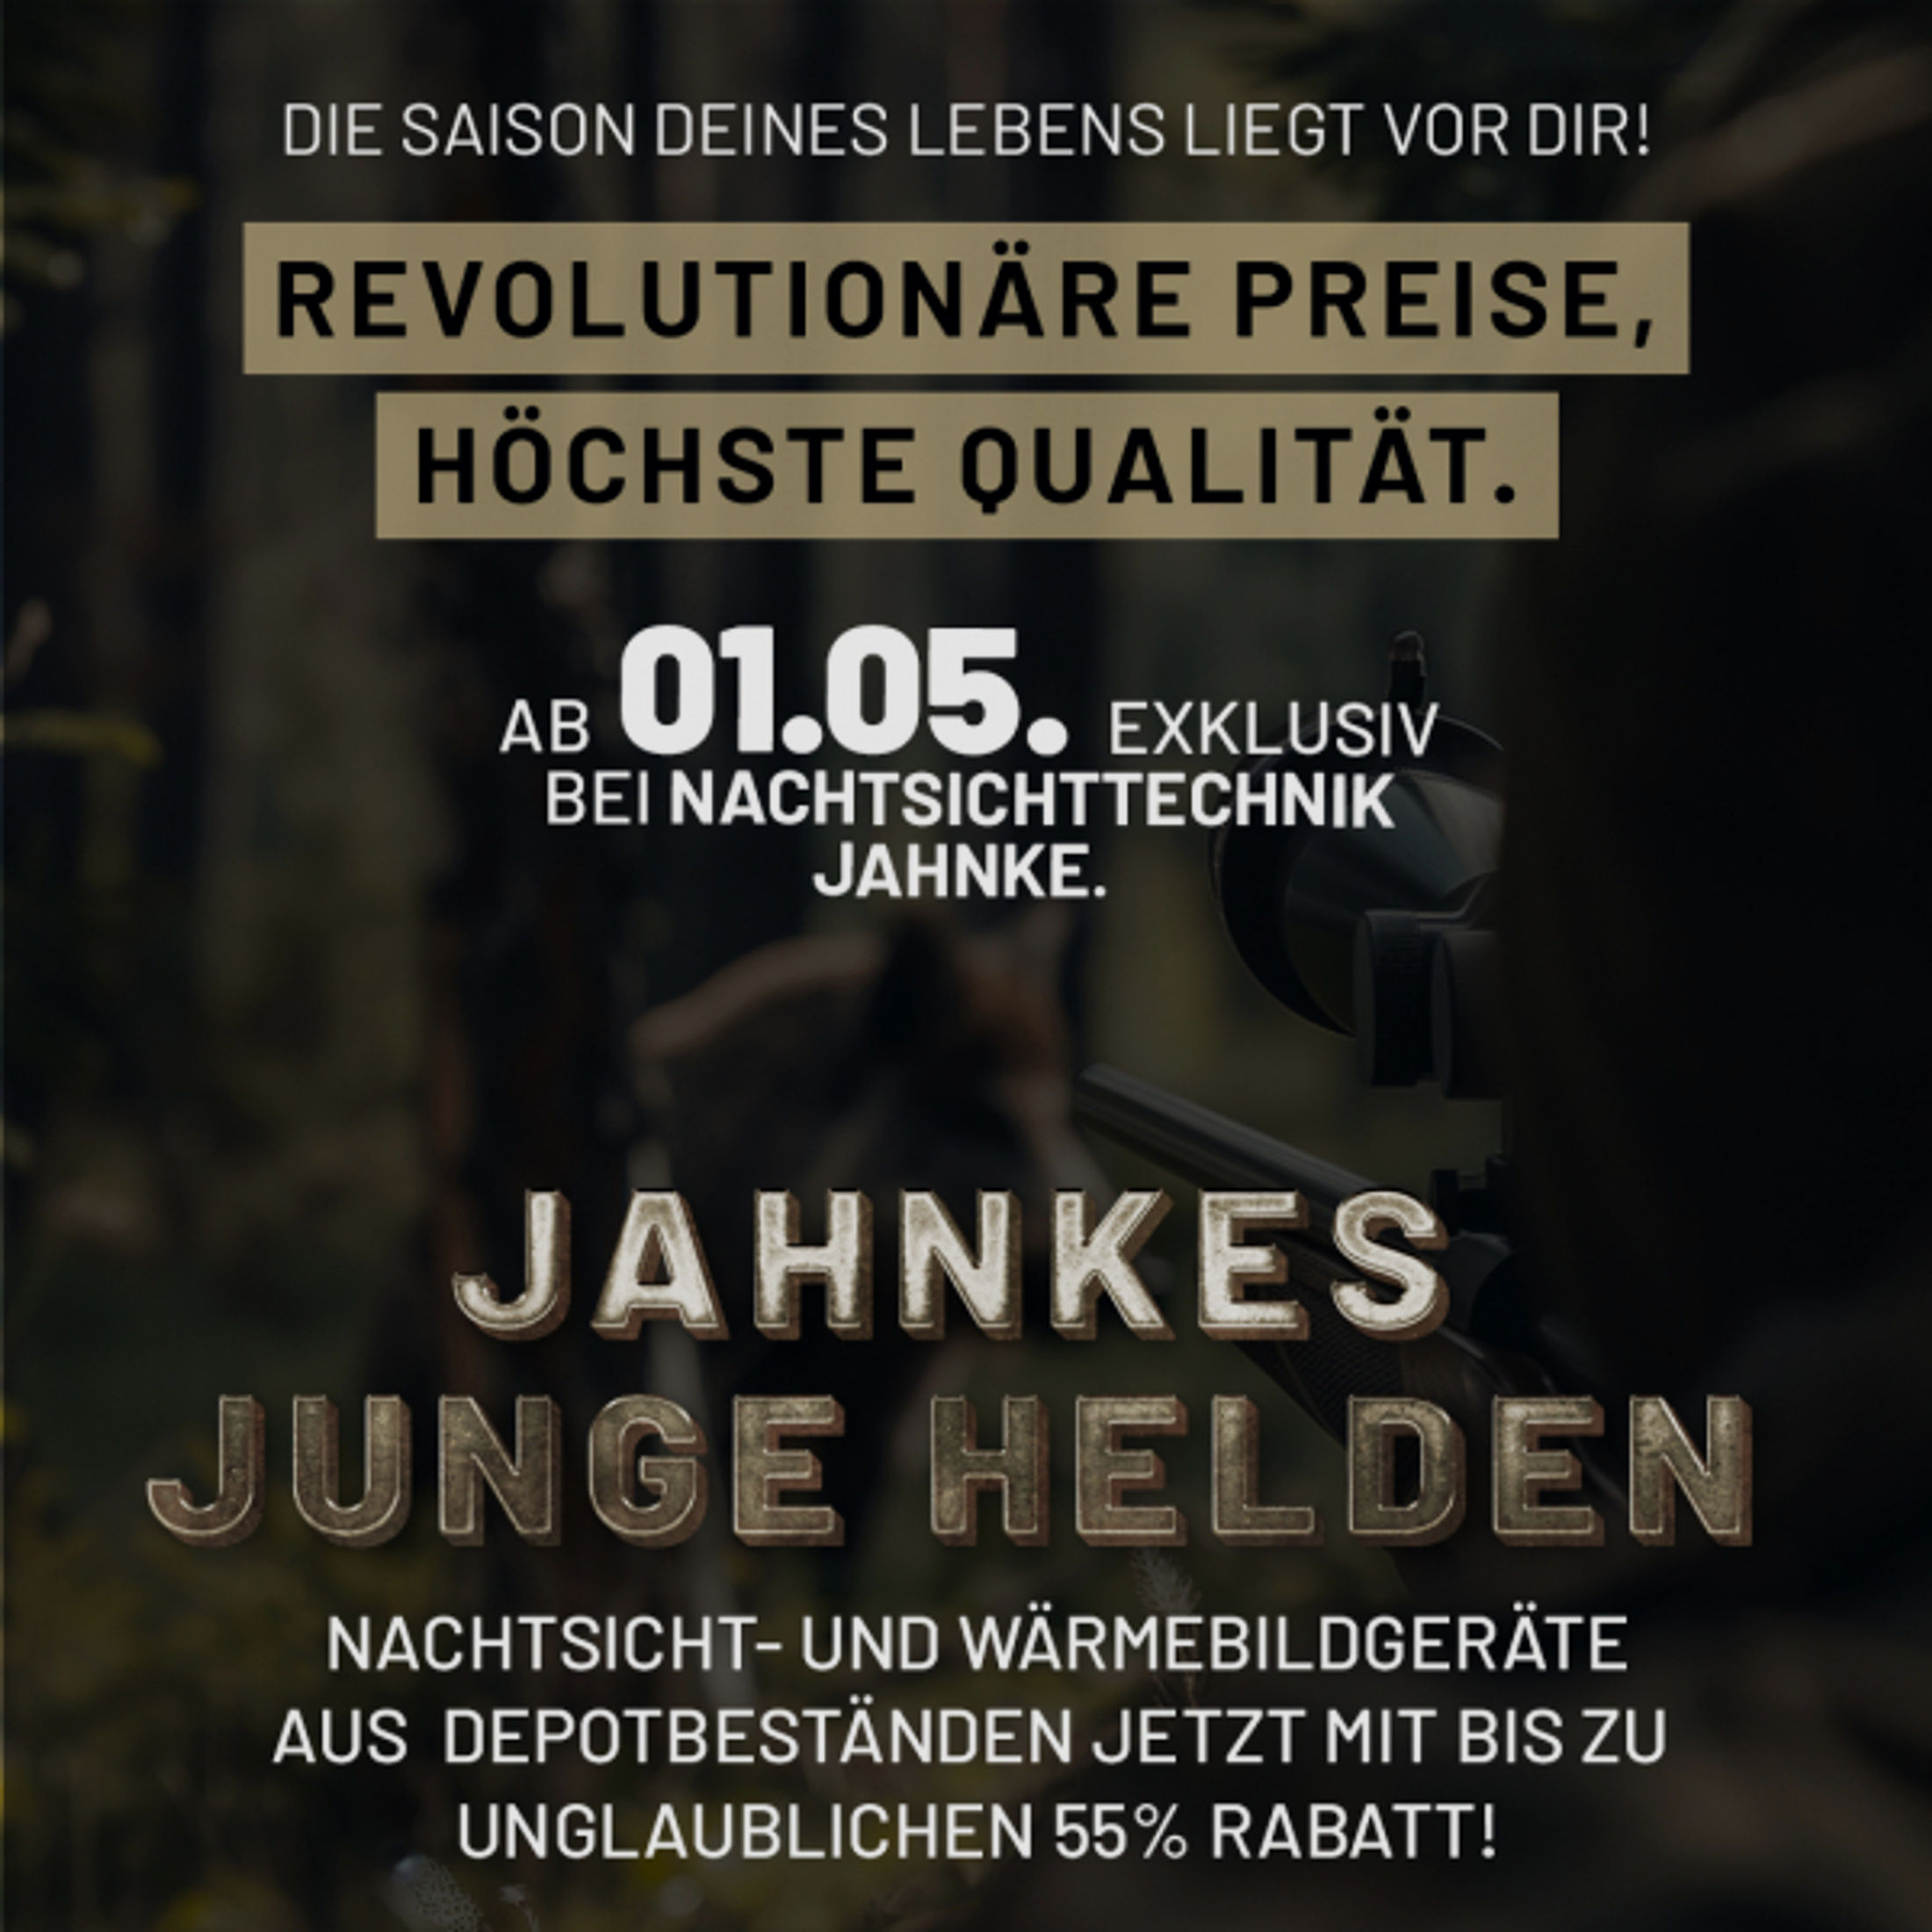 DJ-8 NSV 1×58 JJH aus der Jahnke Junge Helden" Aktion LK 2 S 2, Jahnke Premium